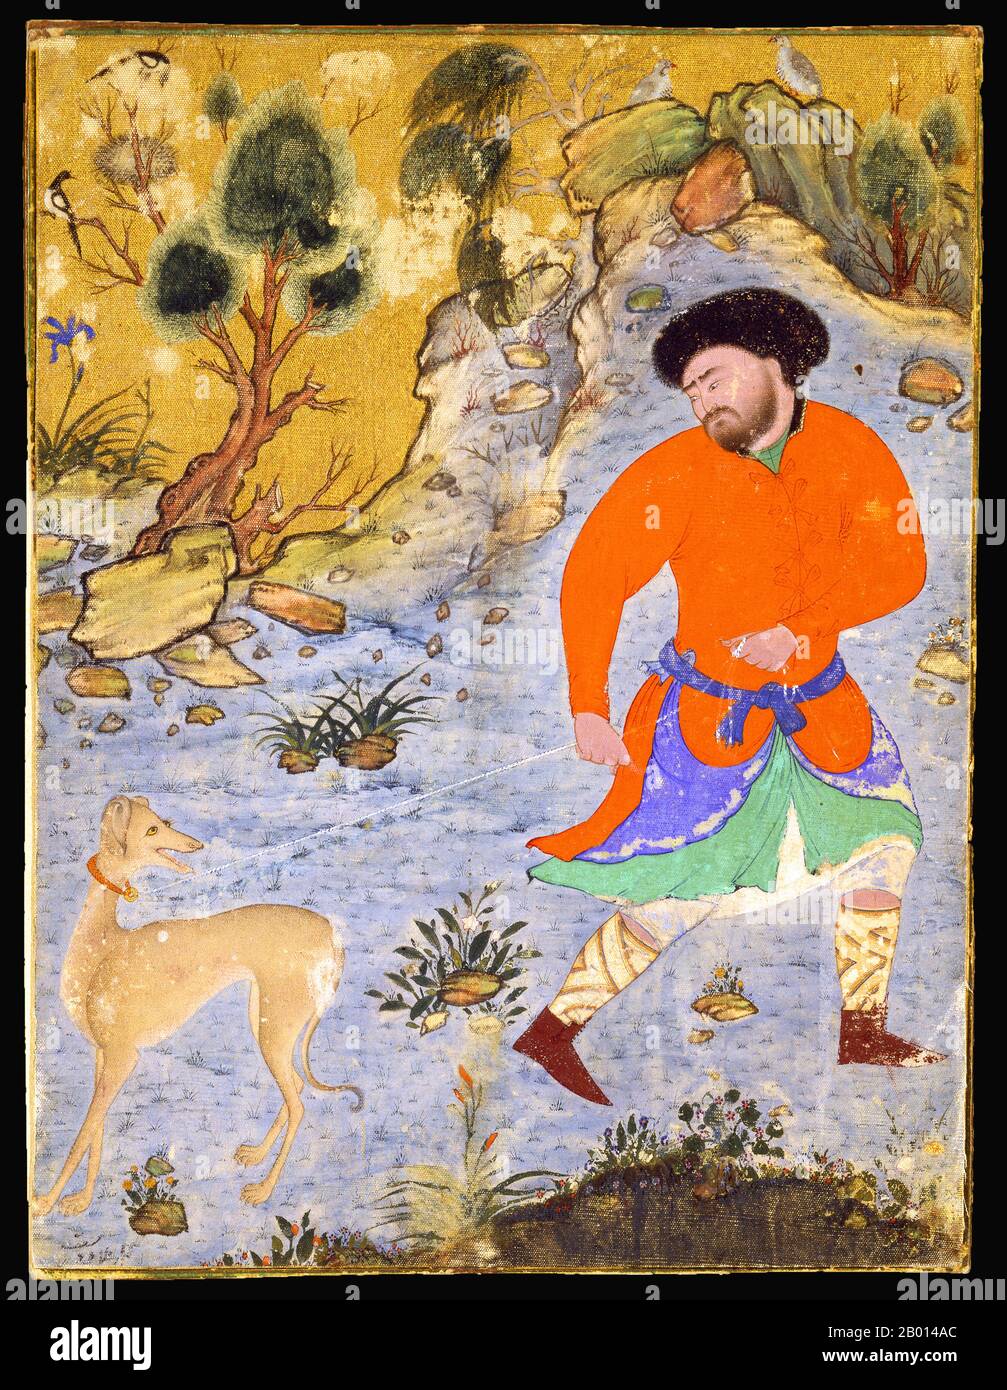 Iran: Un homme avec un chien de chasse Saluki apparemment récalcitrant sur une laisse. Peinture miniature sur tissu par Sheyk Muhammad, milieu du XVIe siècle. Banque D'Images